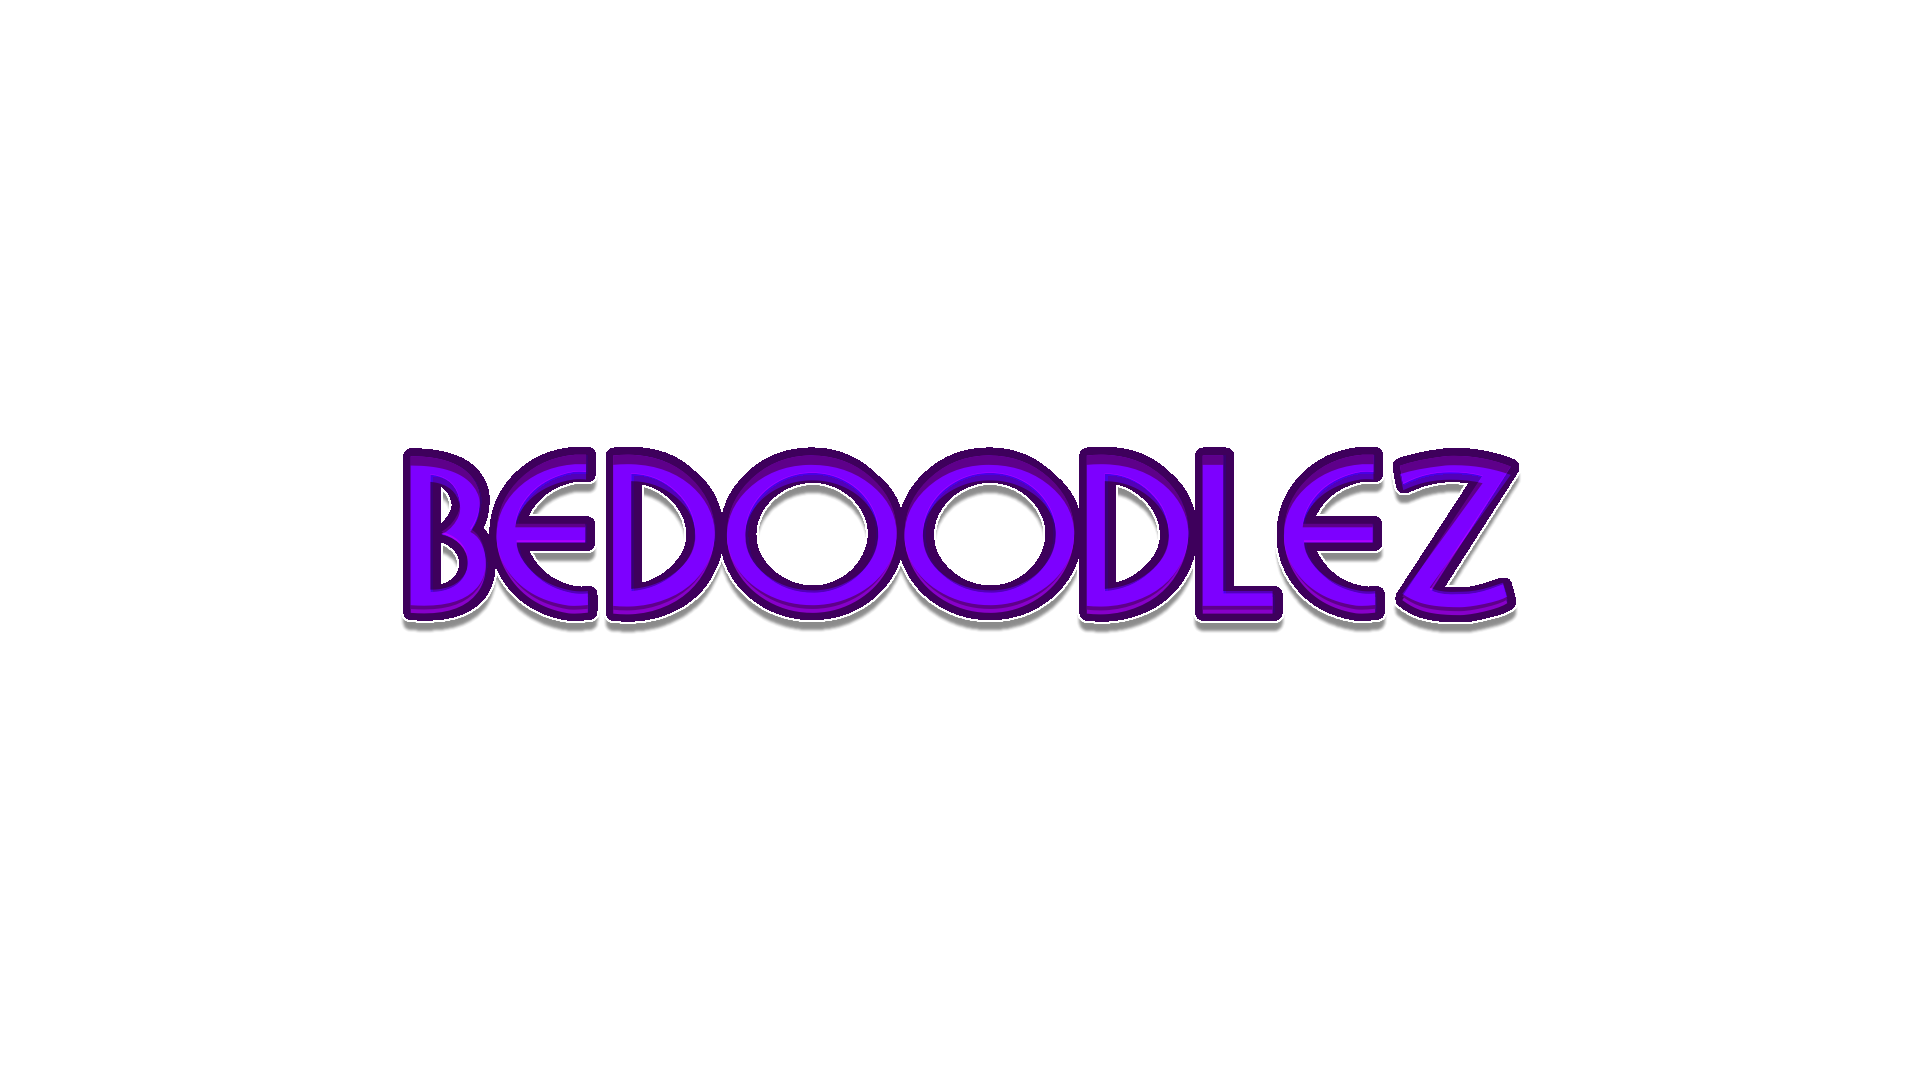 BeDoodlez (BETA V1.00 // Unfinished)